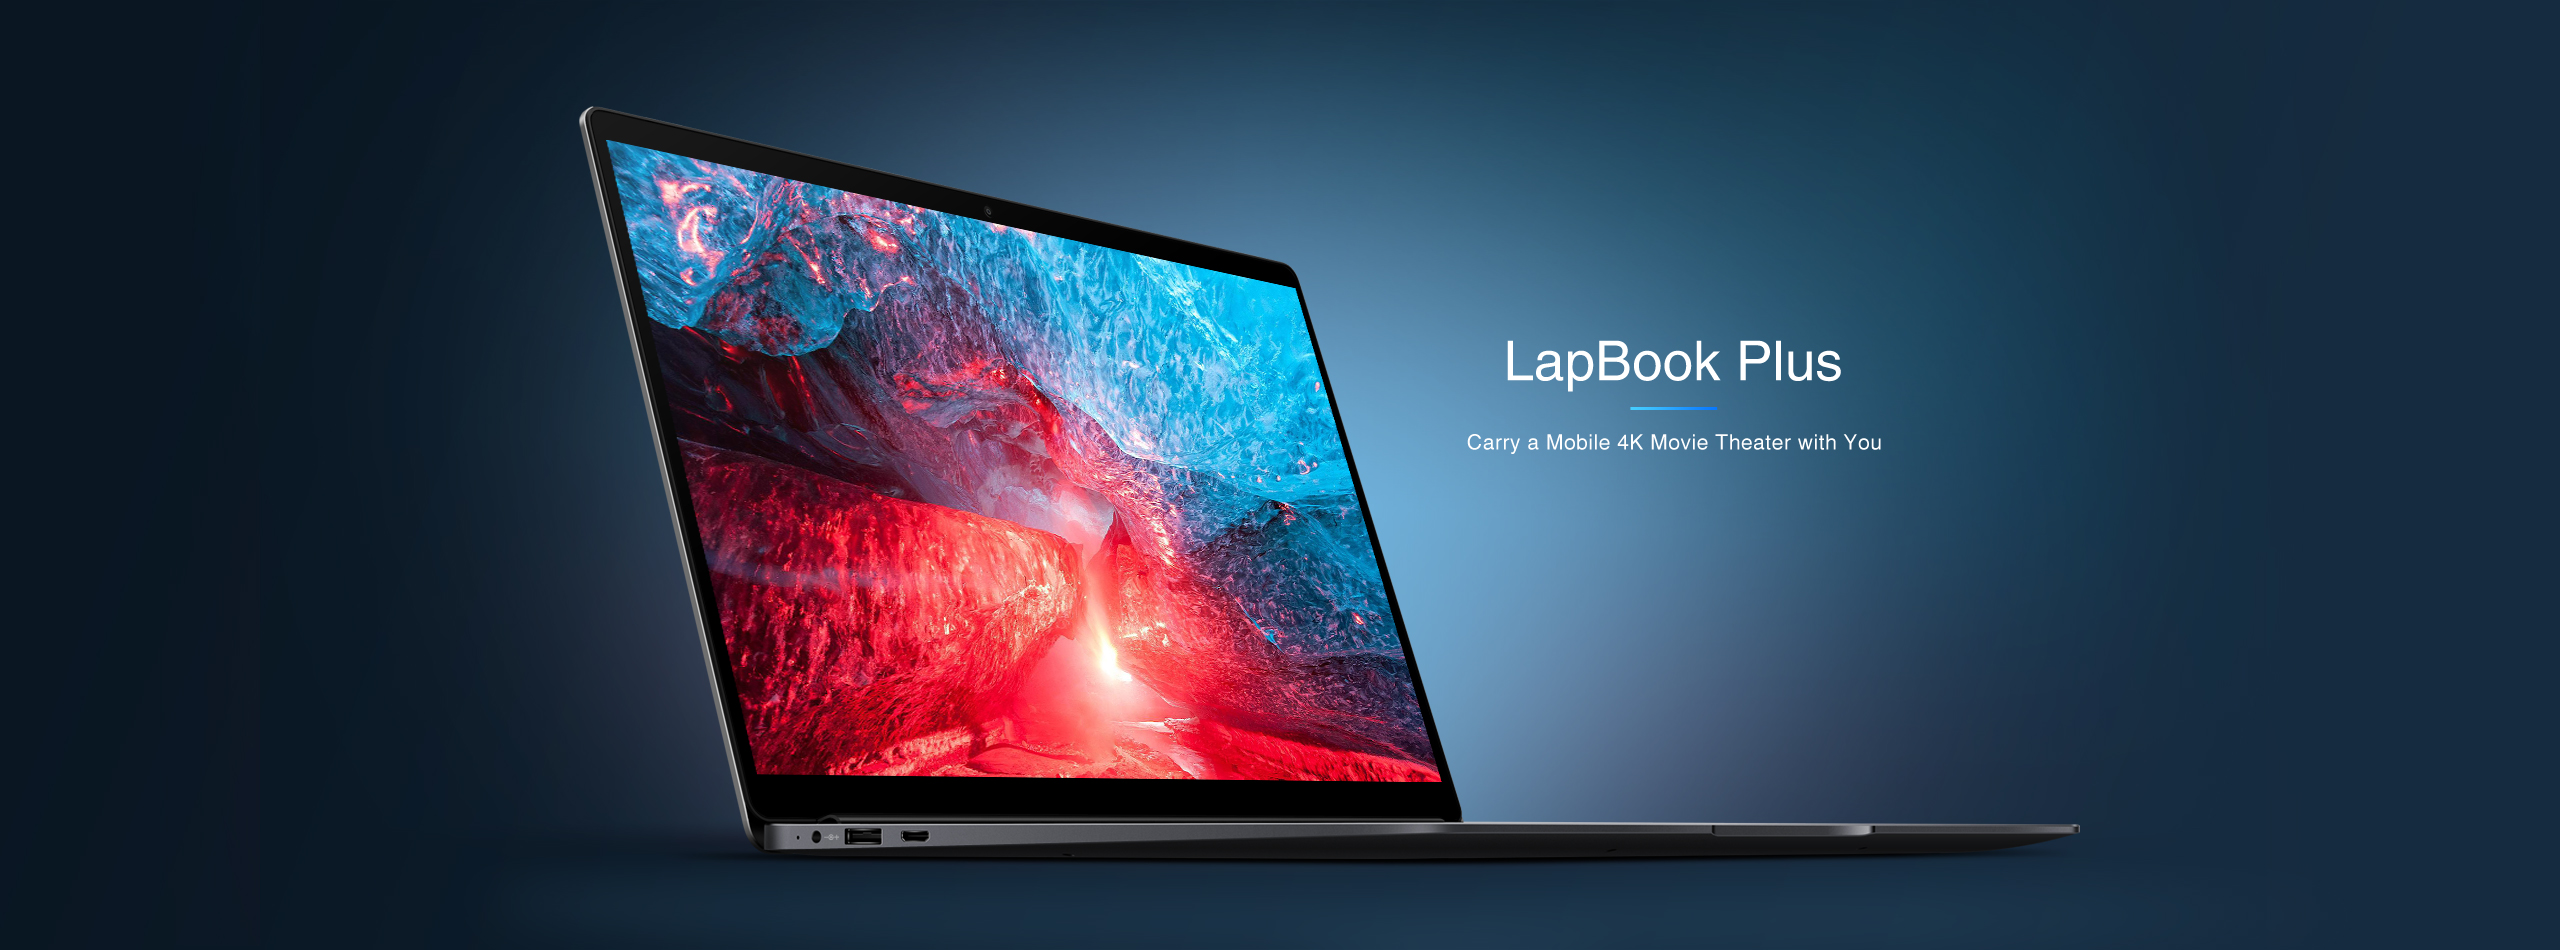 Chuwi LapBook Plus -  External Reviews